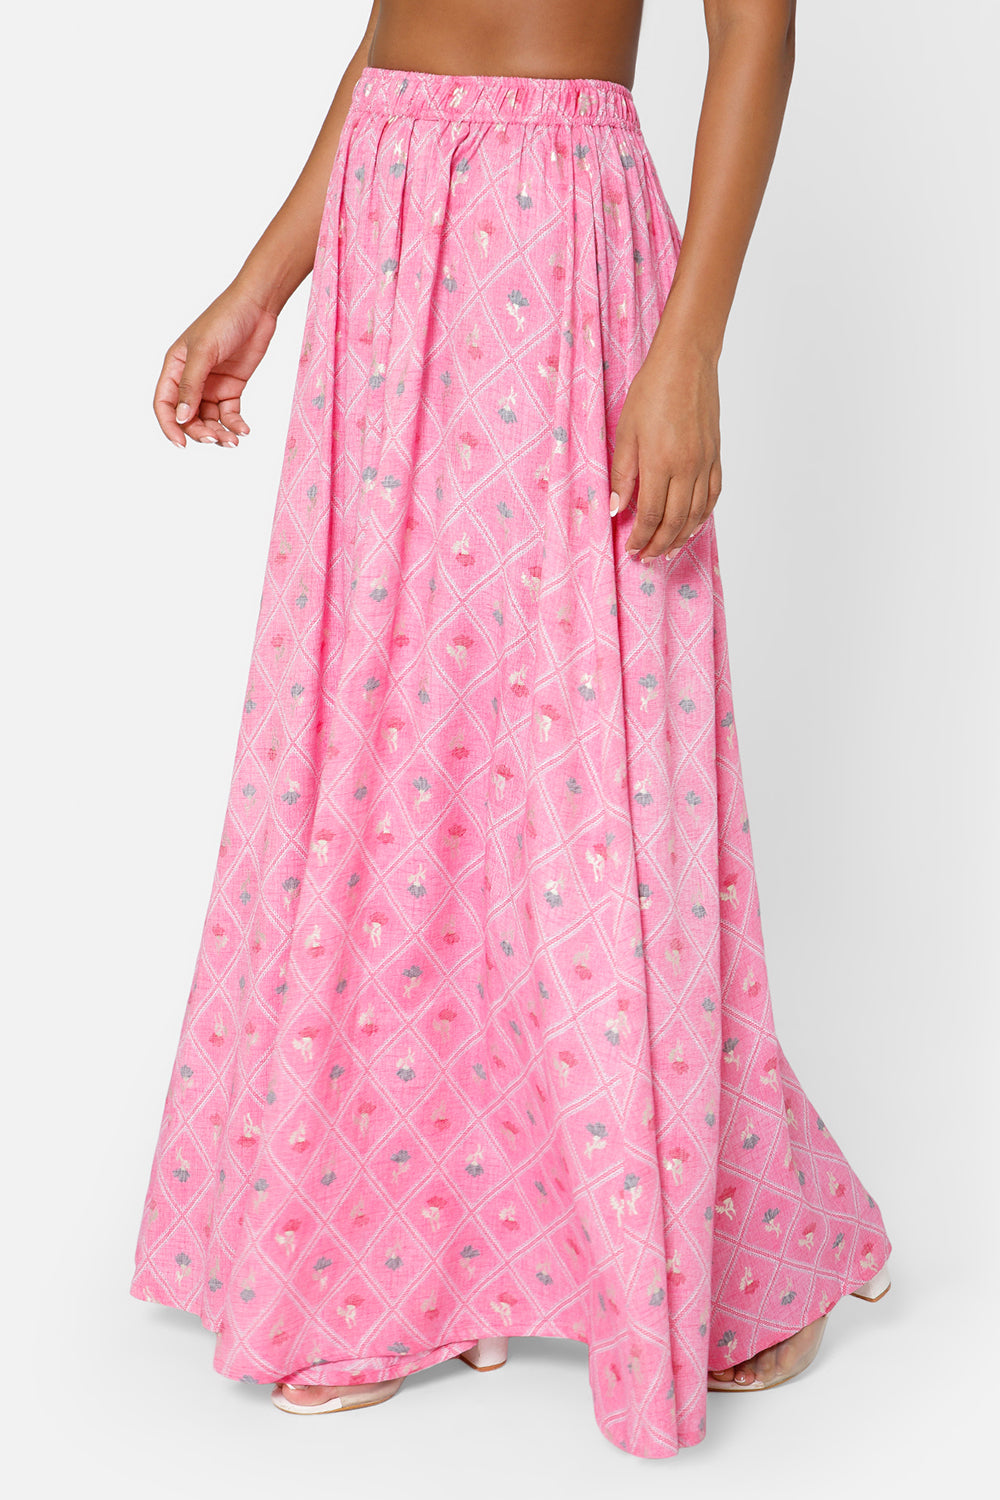 Mythri Women's Full Flare Skirt - Pink Print - SK05